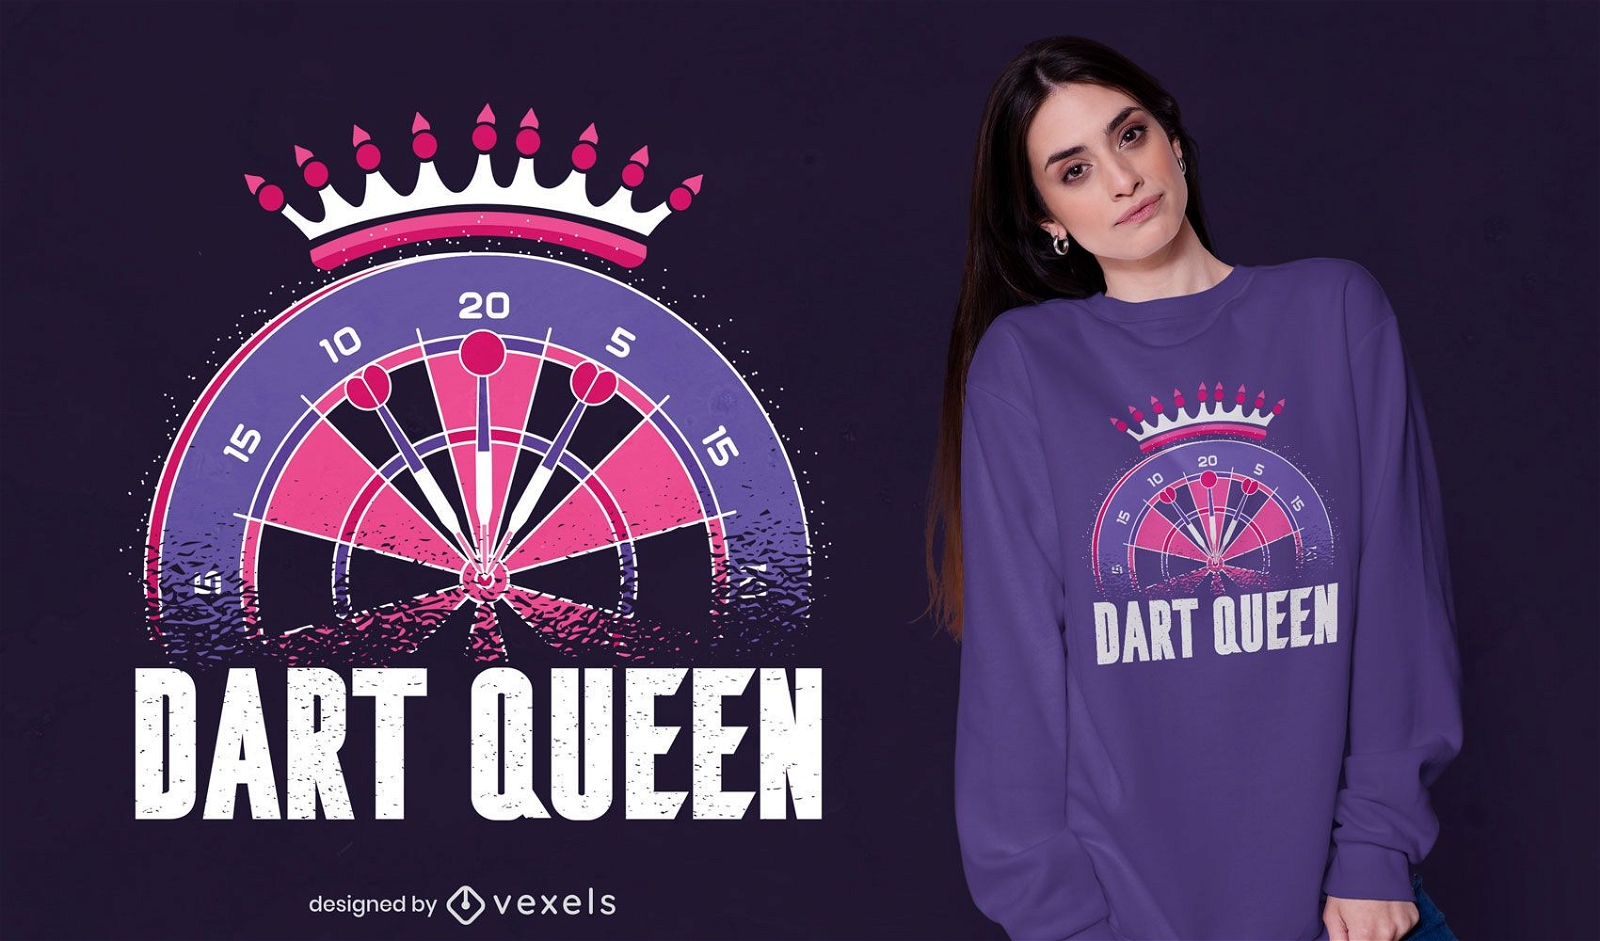 Dart queen t-shirt design